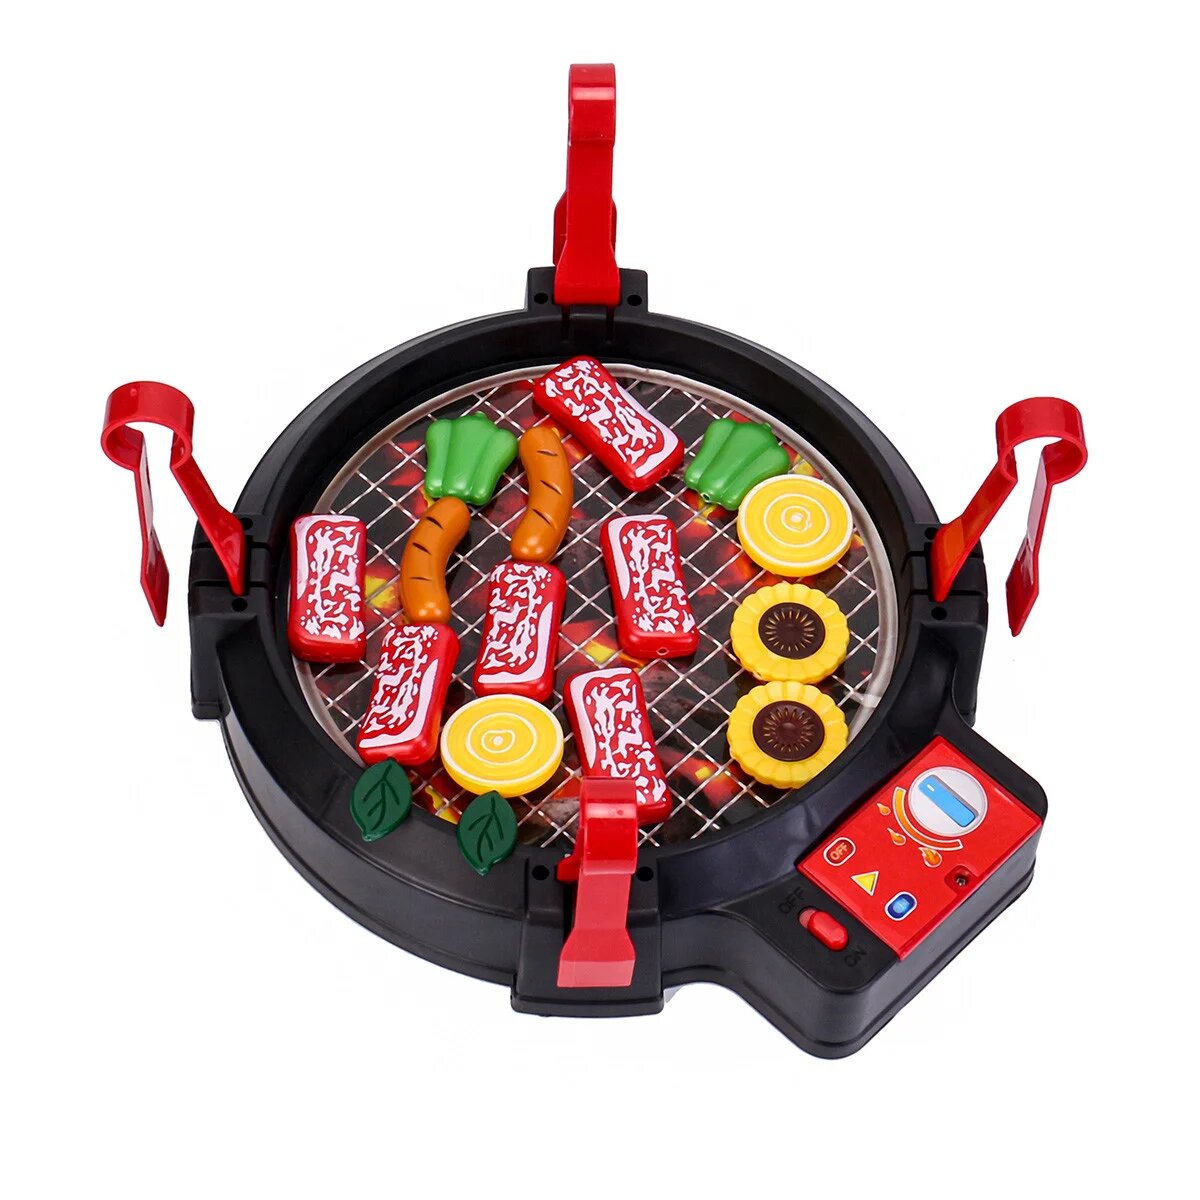 Игровой набор Детский гриль для барбекю, набор для приготовления еды со звуковыми эффектами